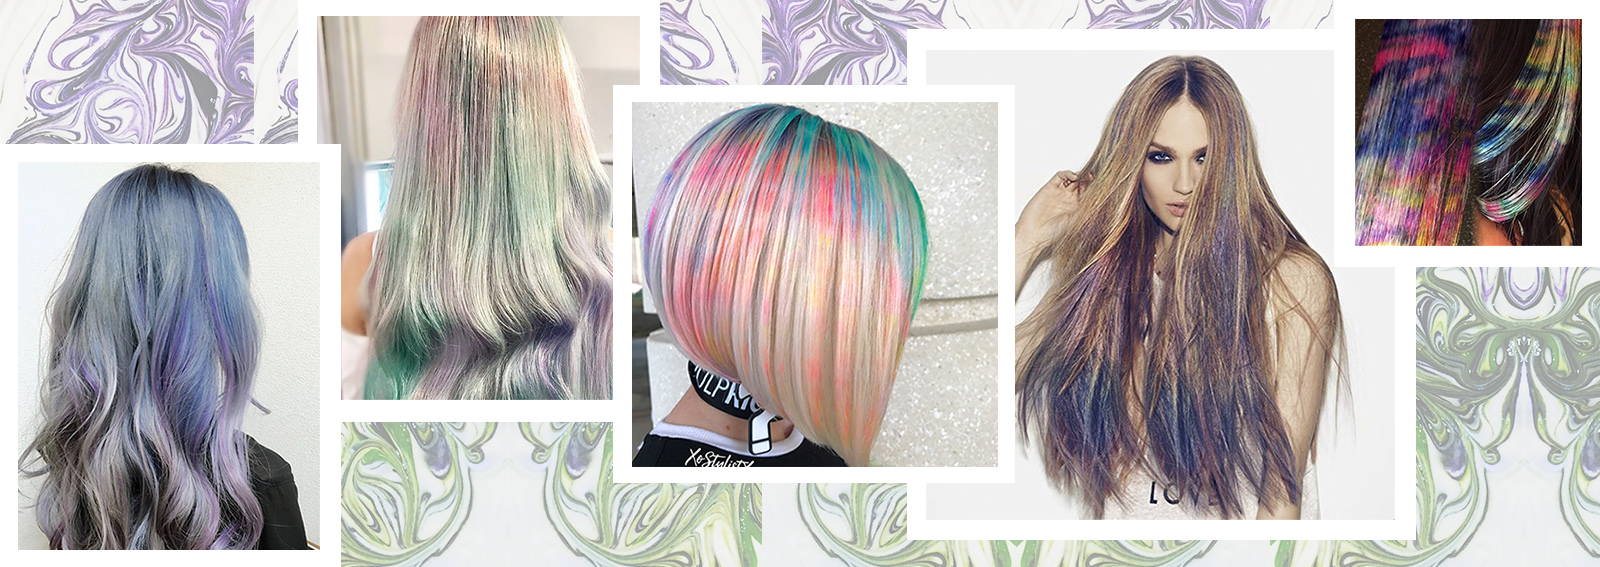 marble hair capelli colorati effetto marmo collage_desktop